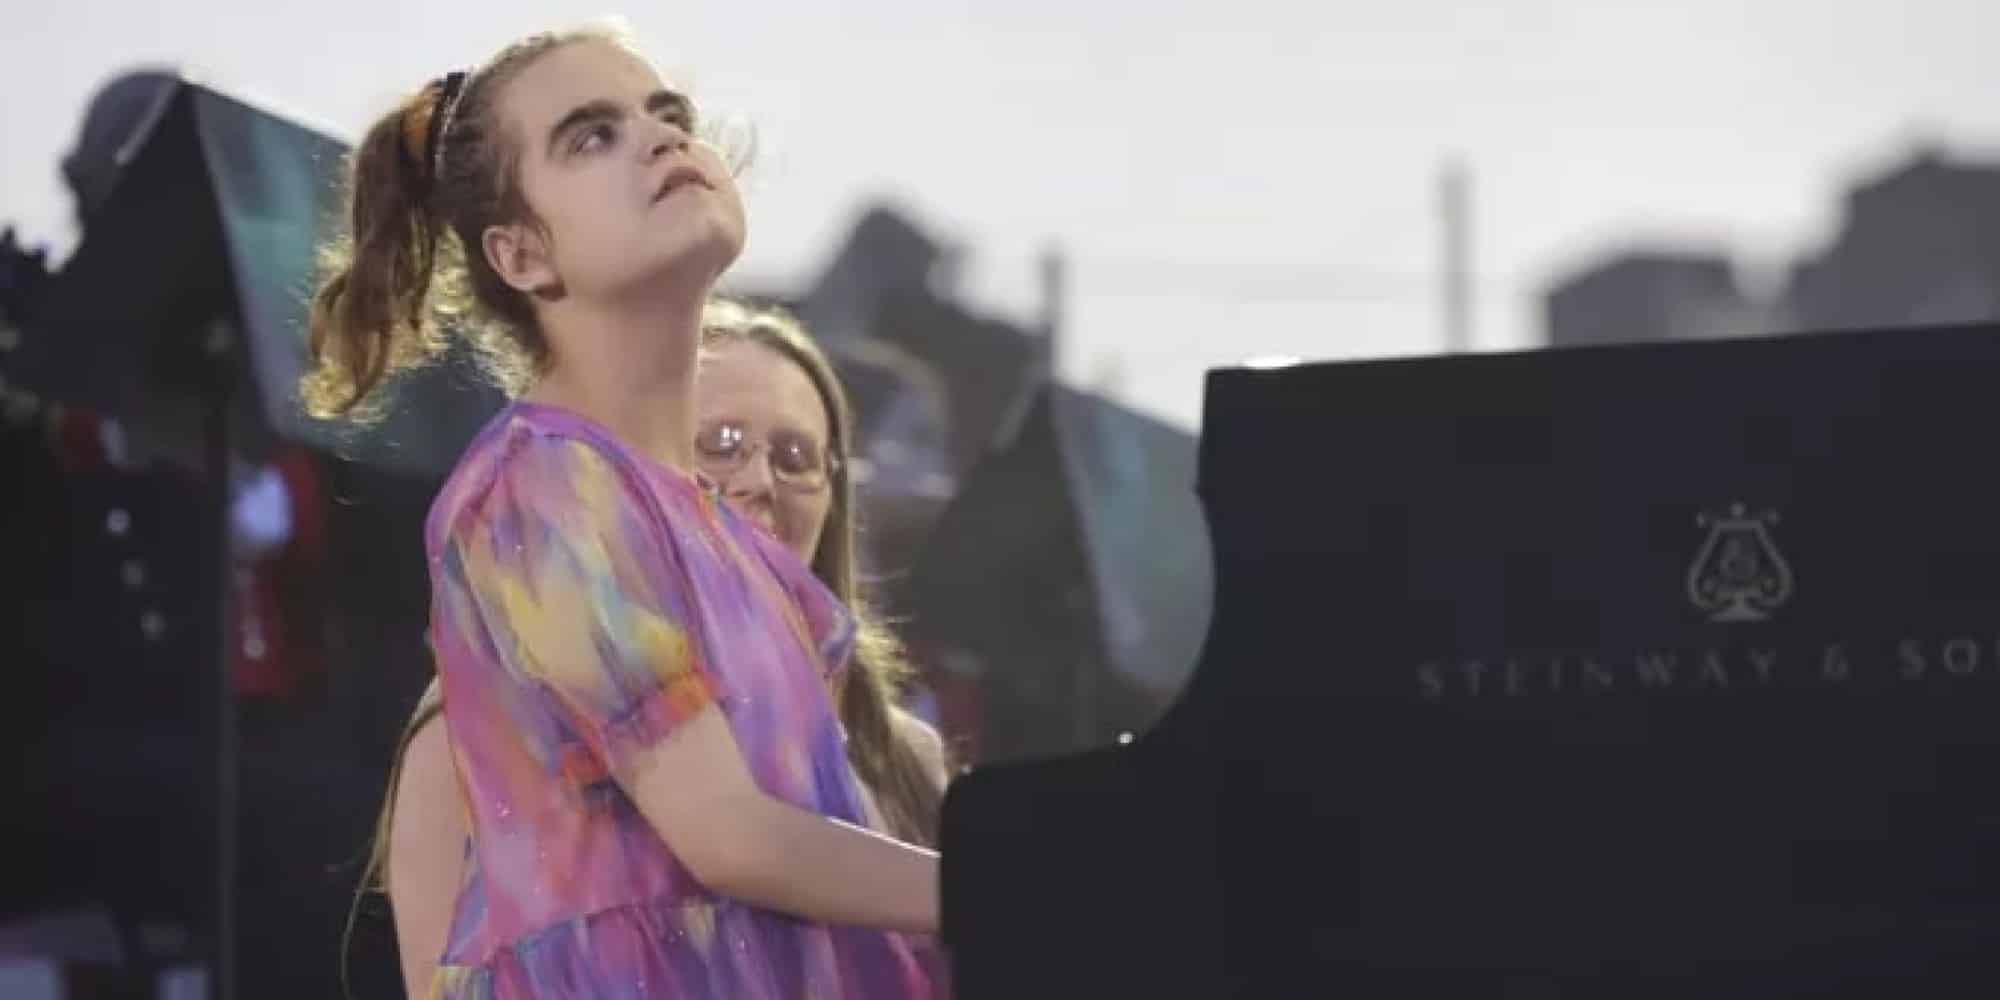 Η 13χρονη τυφλή πιανίστρια που έπαιξε στη συναυλία της στέψης του βασιλιά στο Λονδίνο